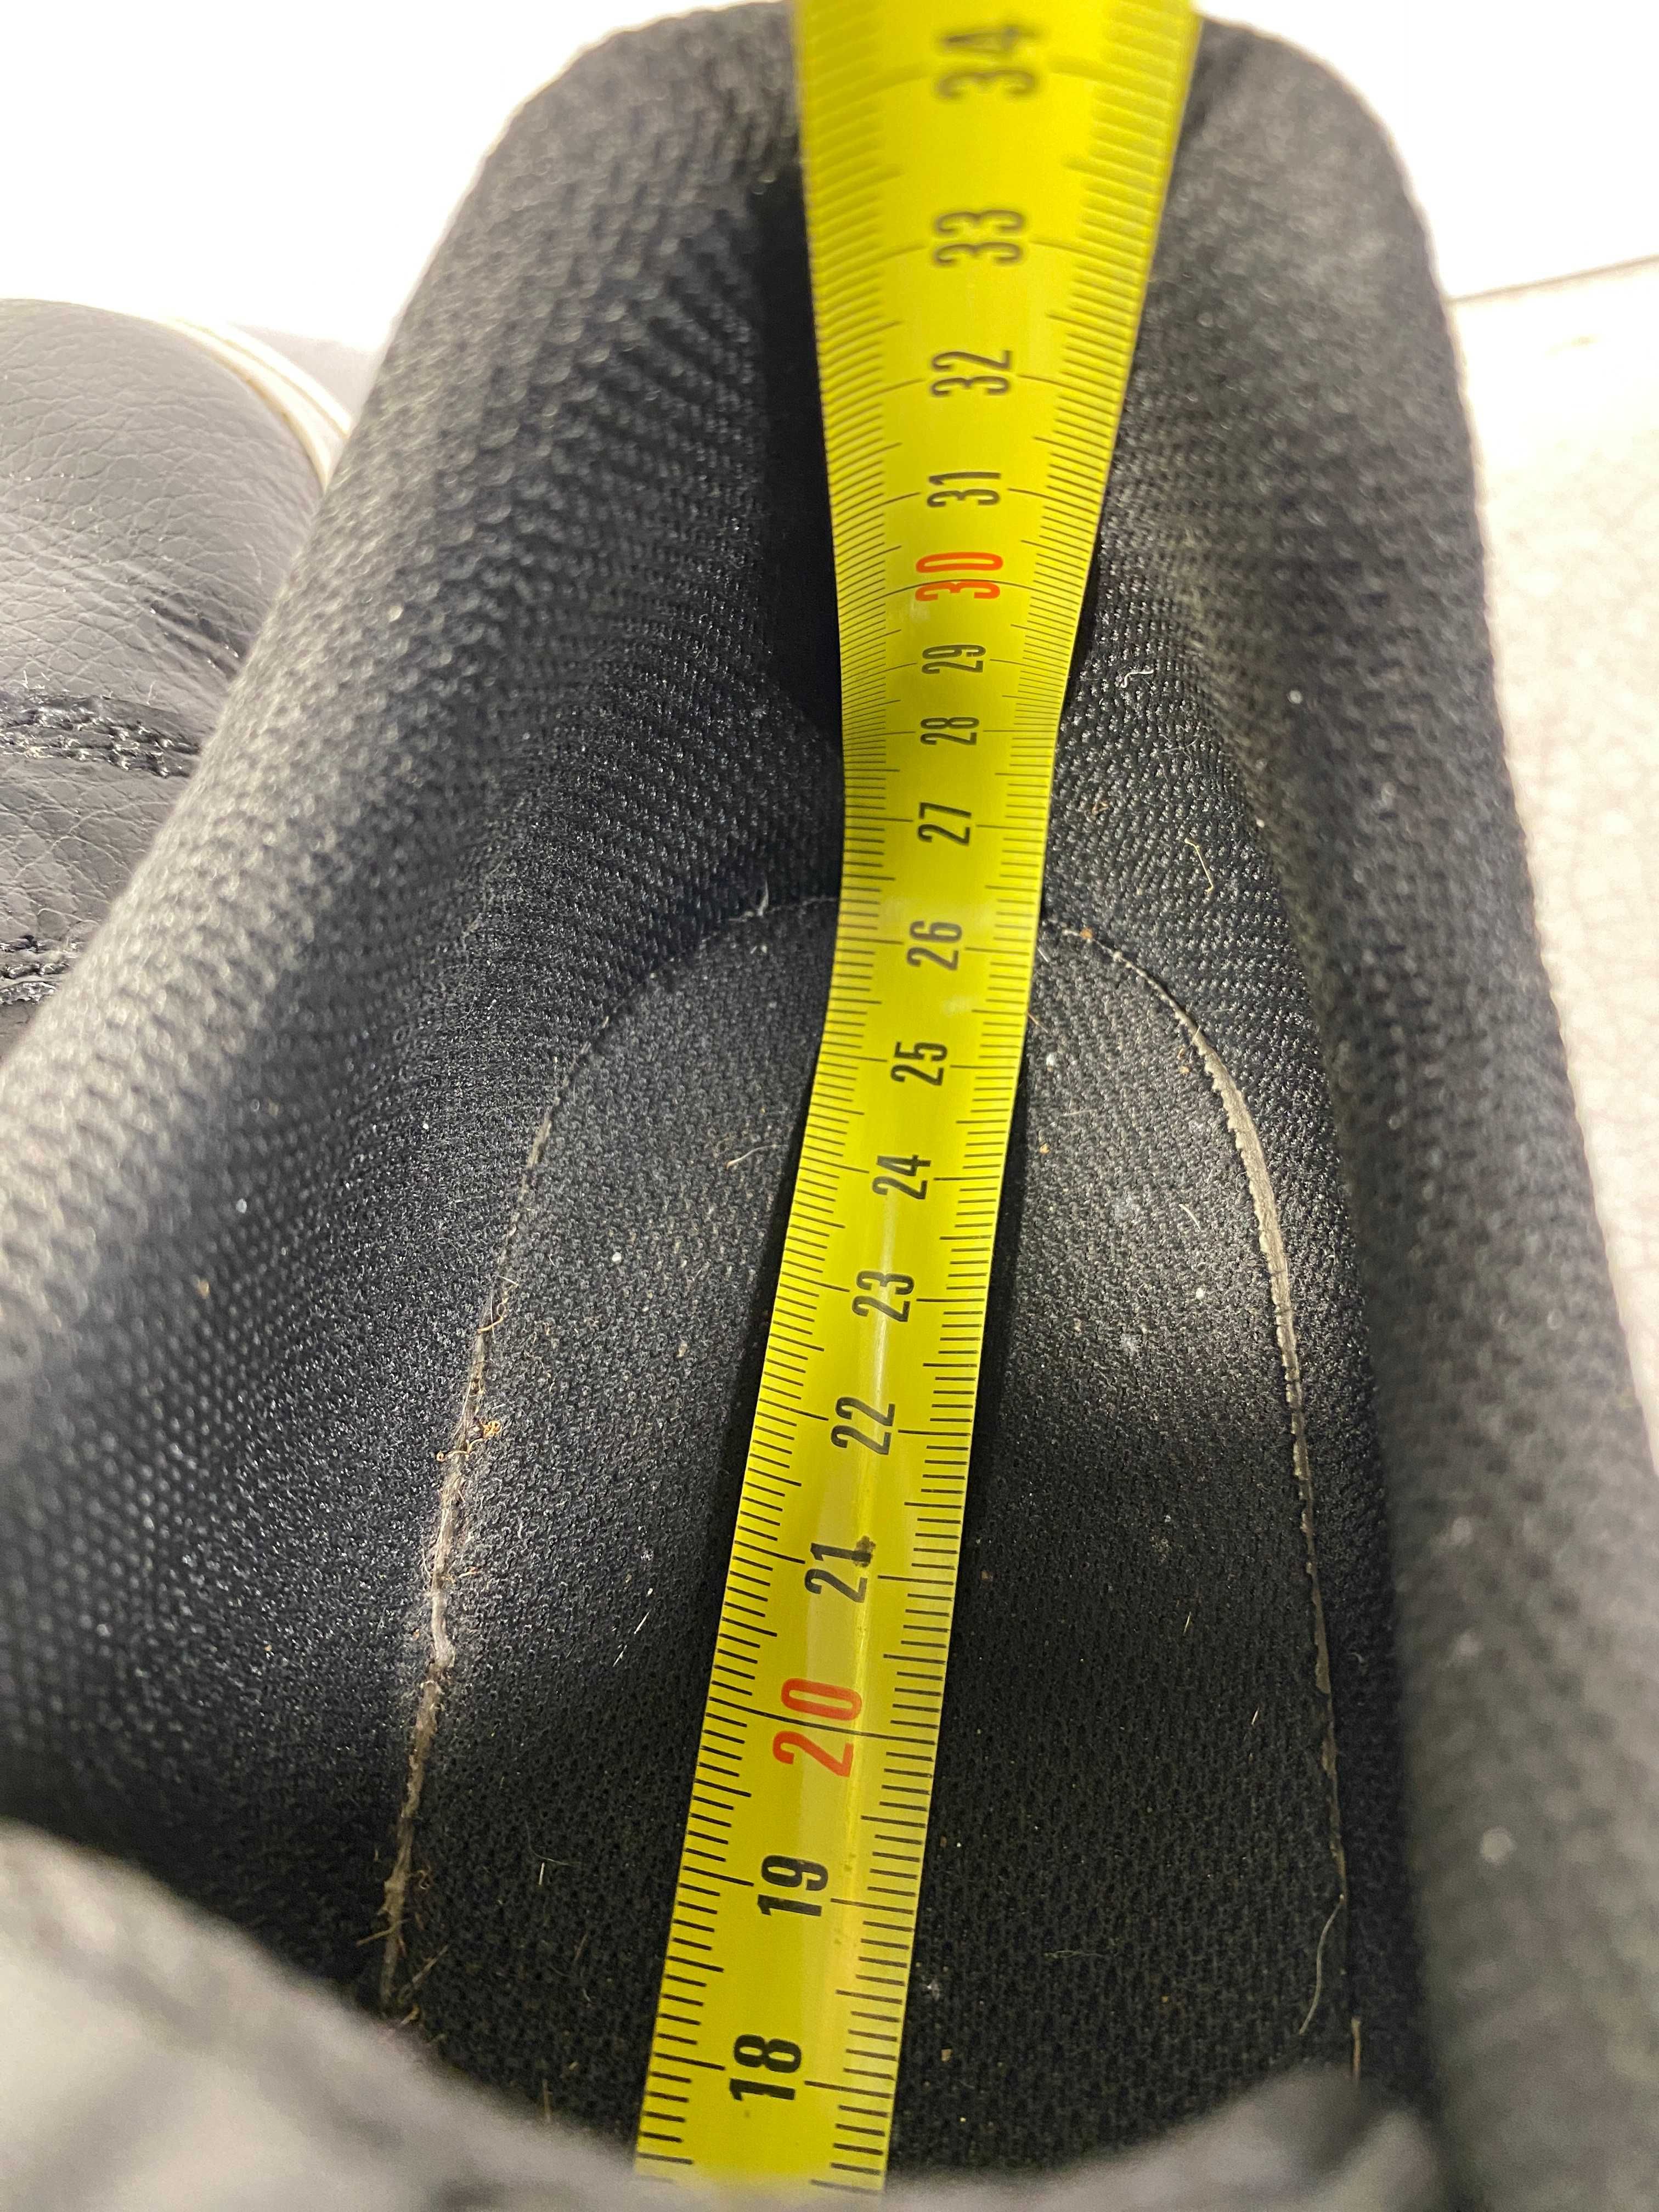 NIKE COURT ROYALE кроссовки кеды мужские 42 р 26,5 см оригинал